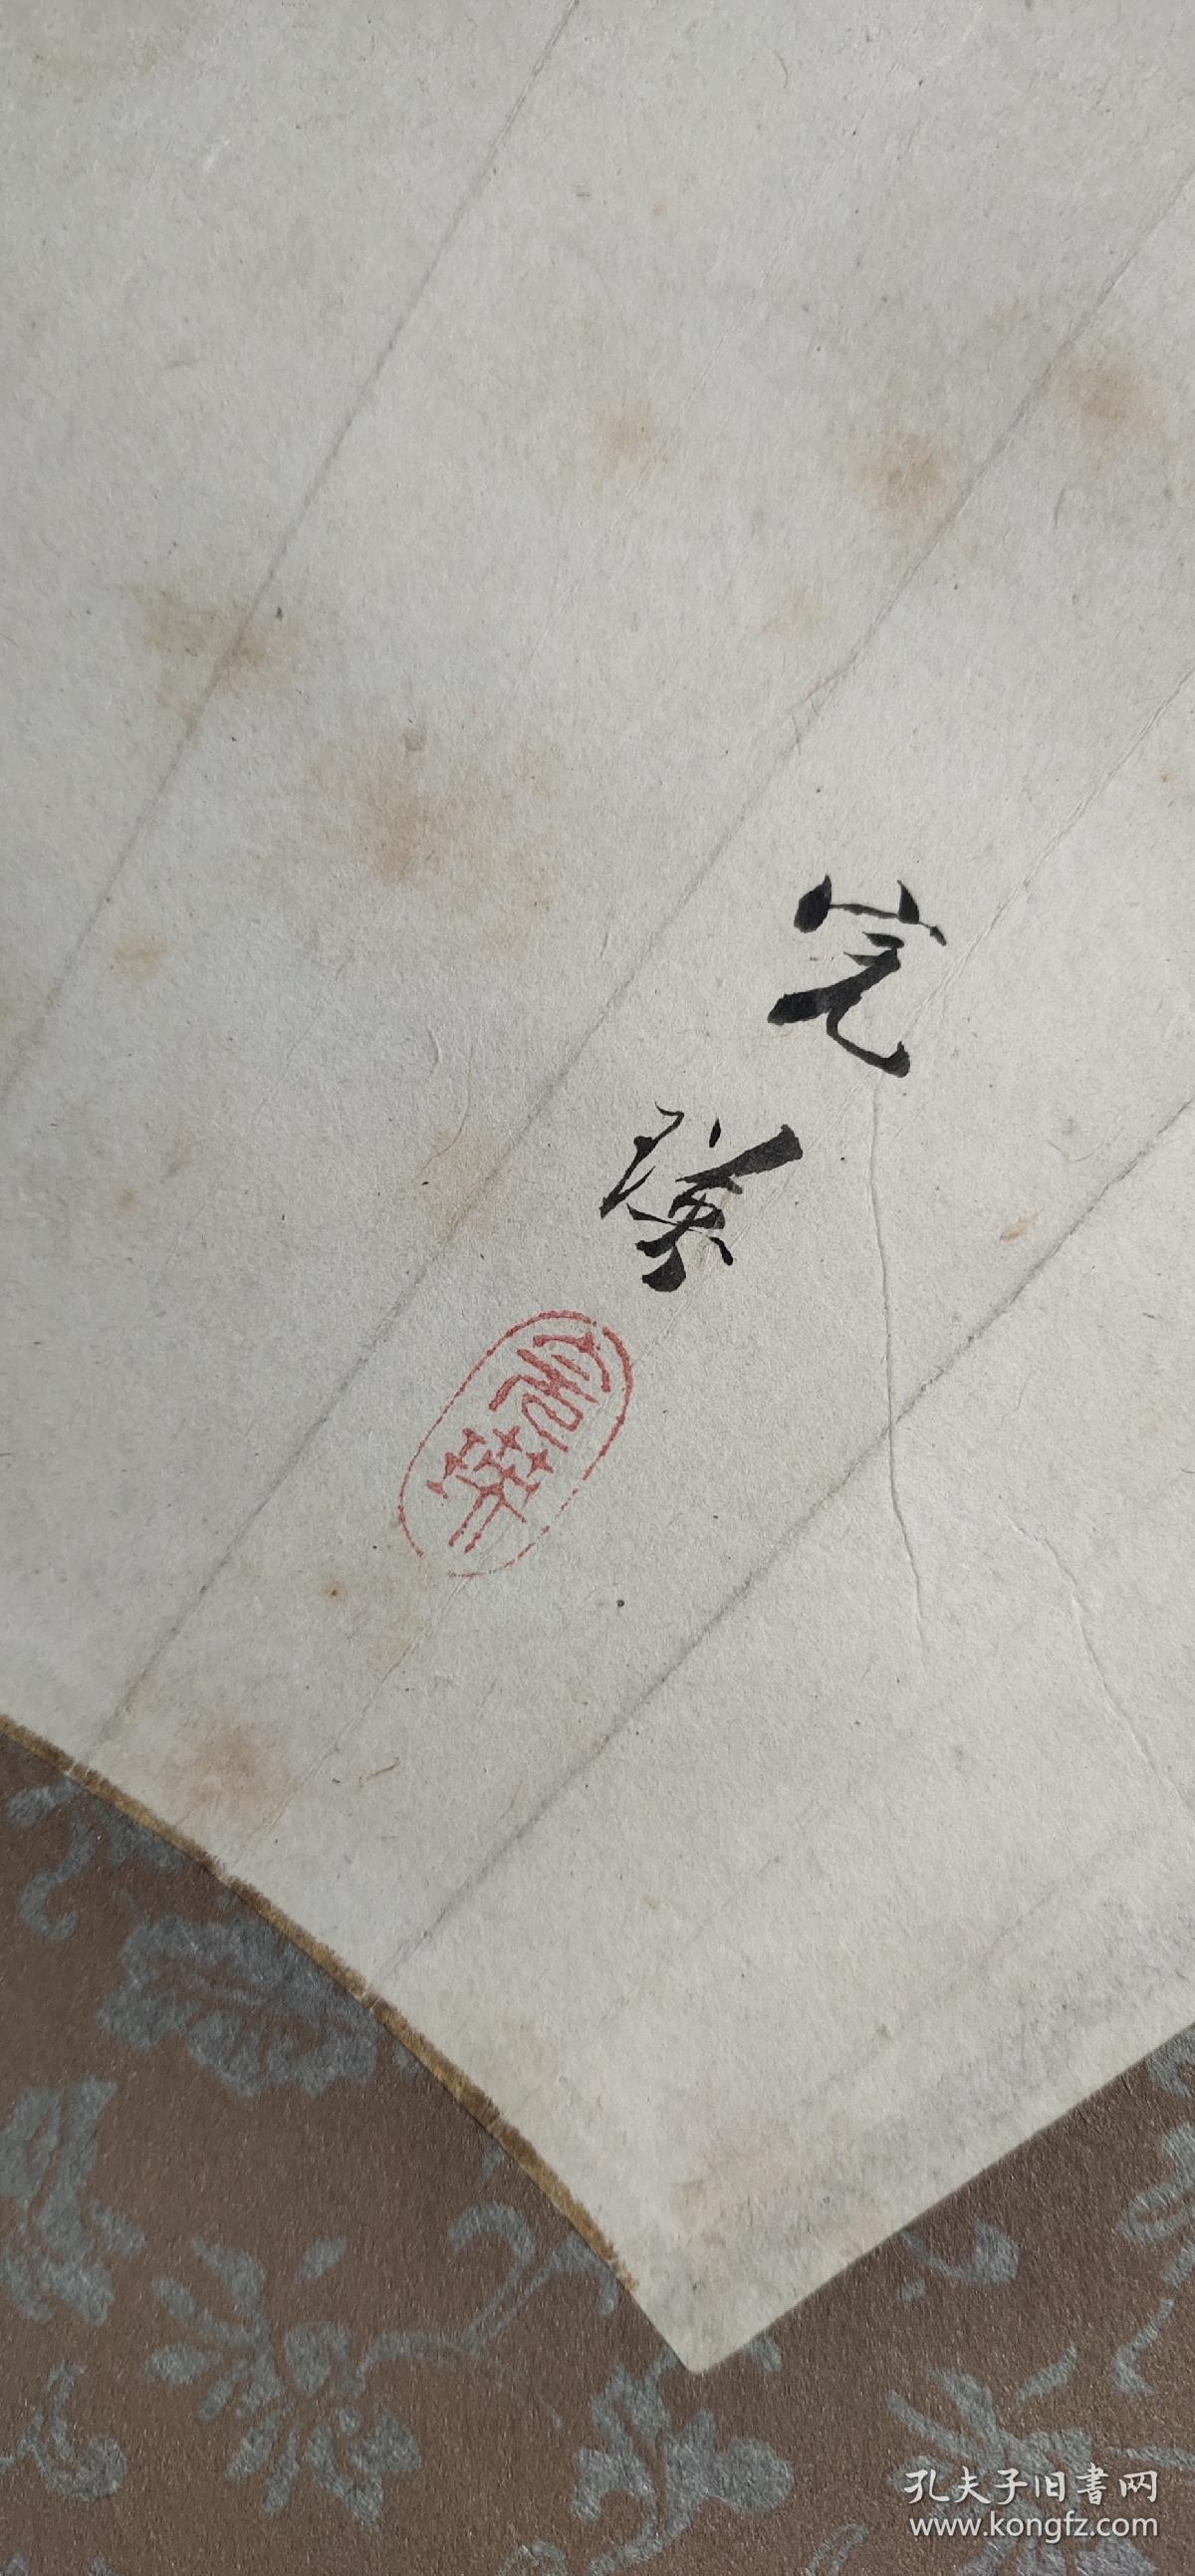 日本回流字画手绘飞鸟图立轴(带木盒)D2226